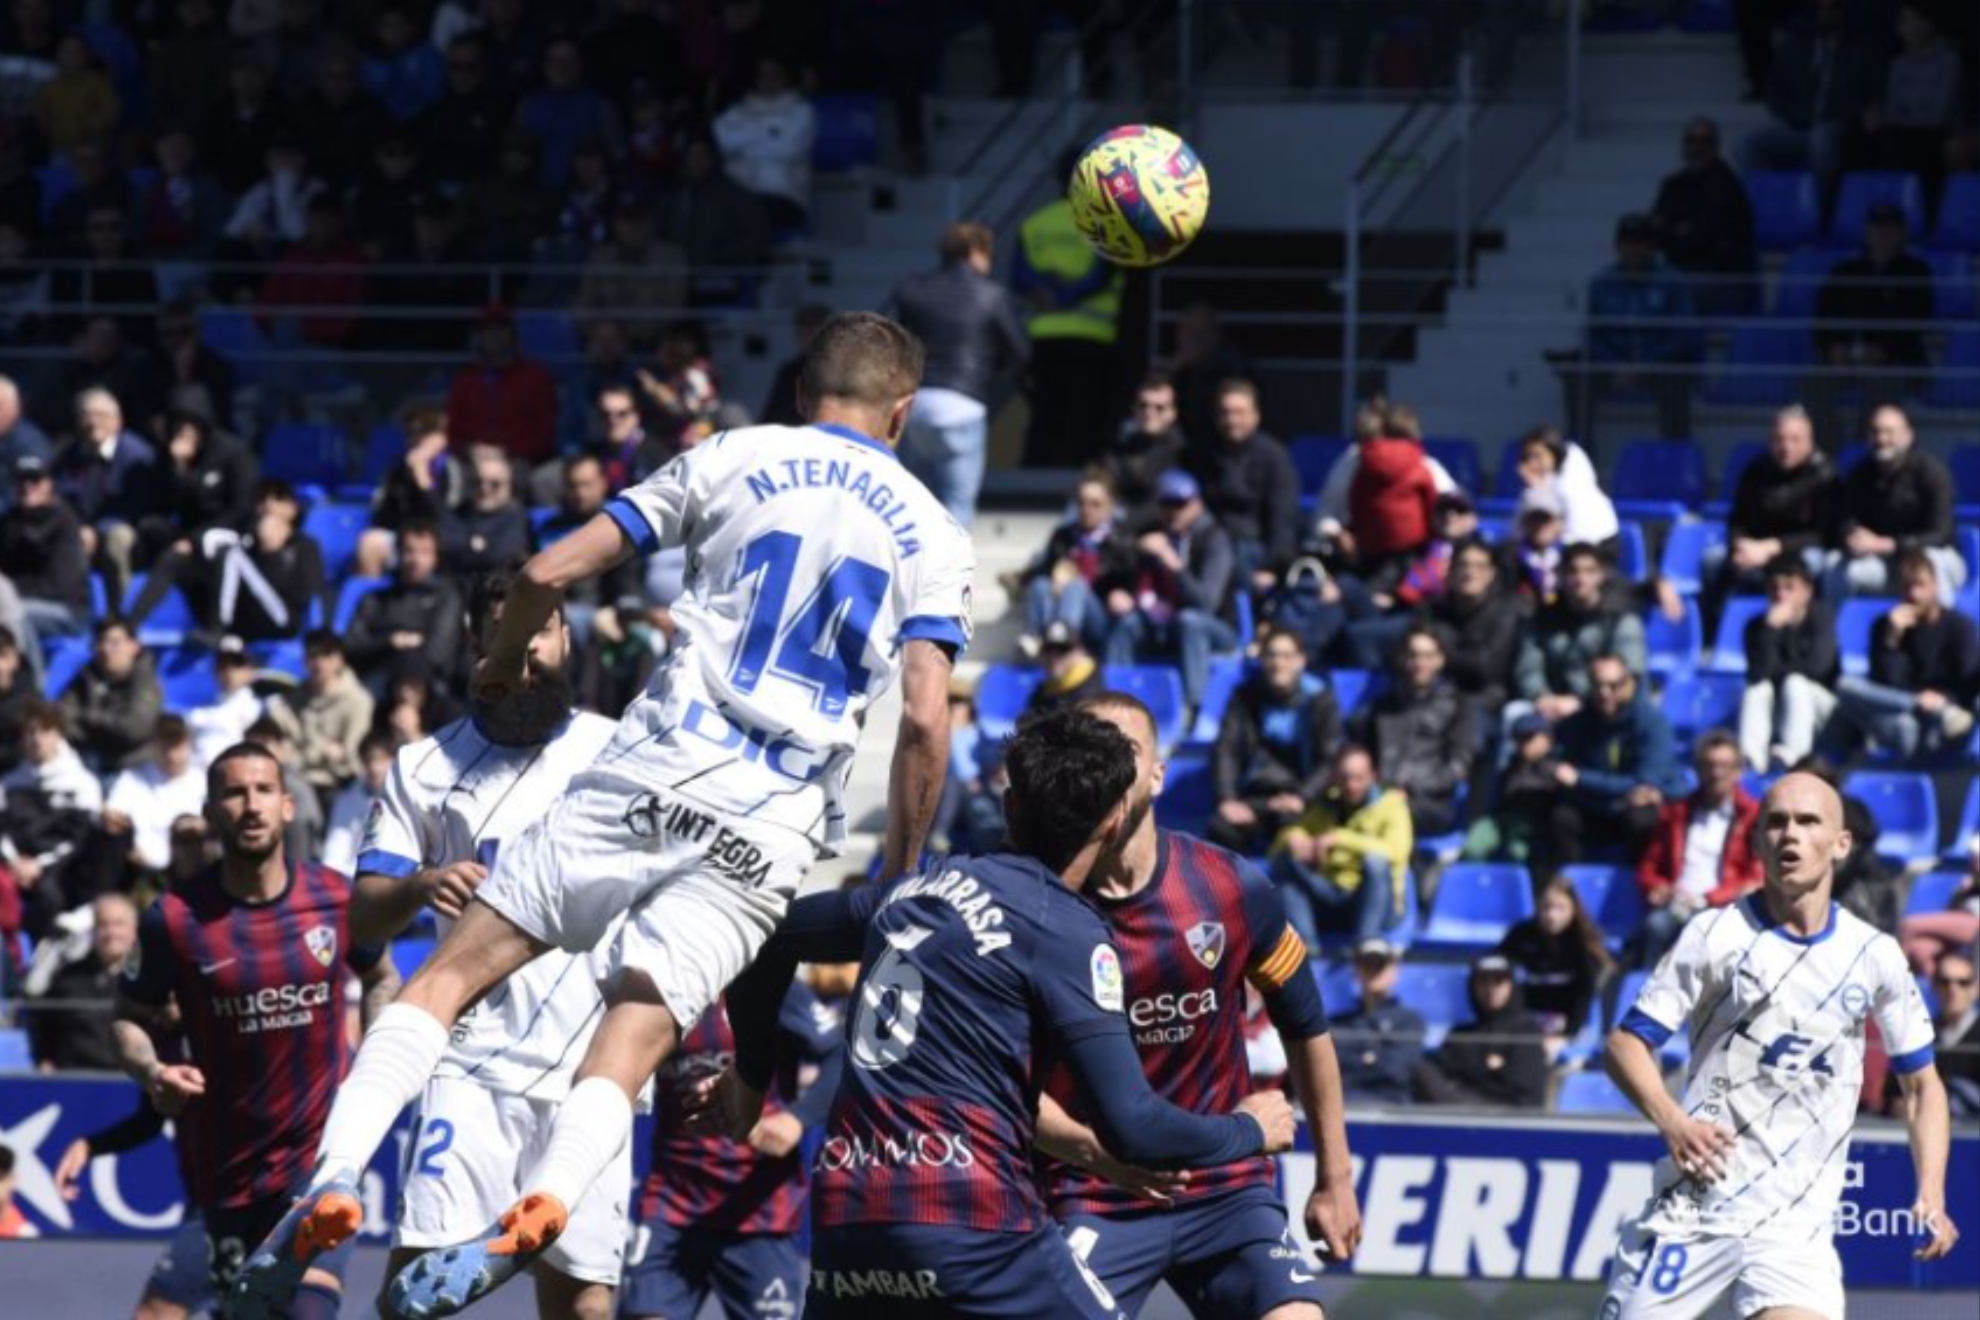 Tenaglia remata  de cabeza para marcar el gol del Alavés al Huesca.